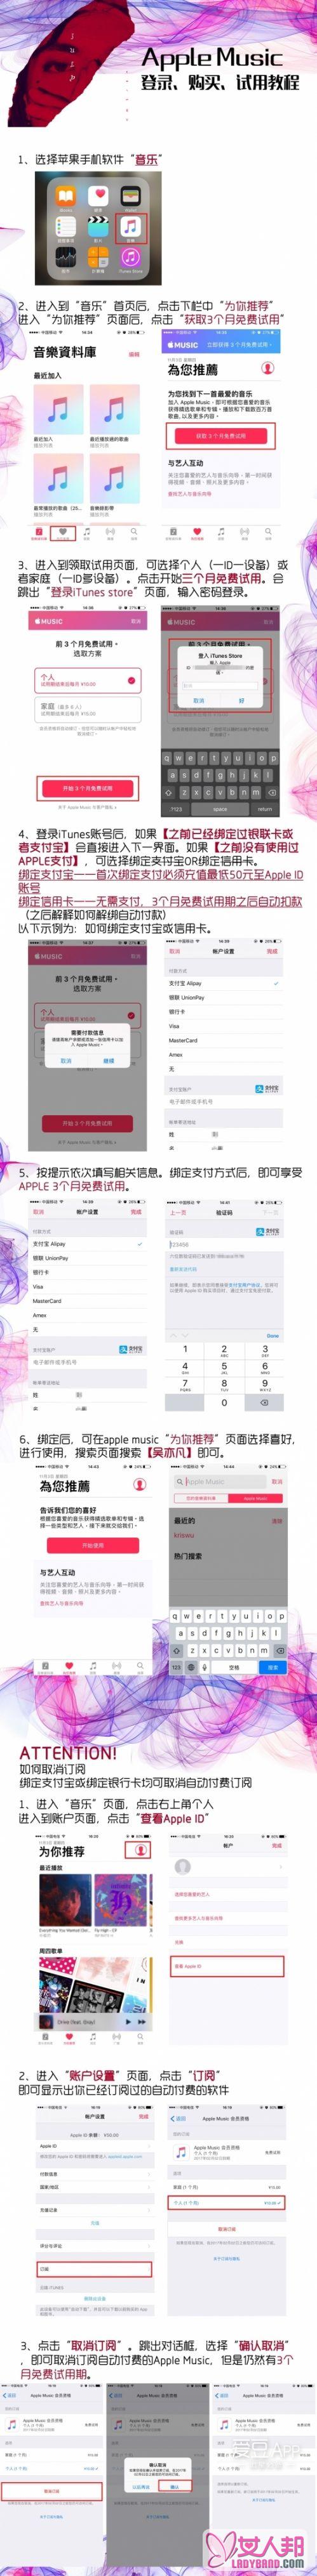 吴亦凡最新单曲《July》哪里试听 iTunes打榜APP使用教程